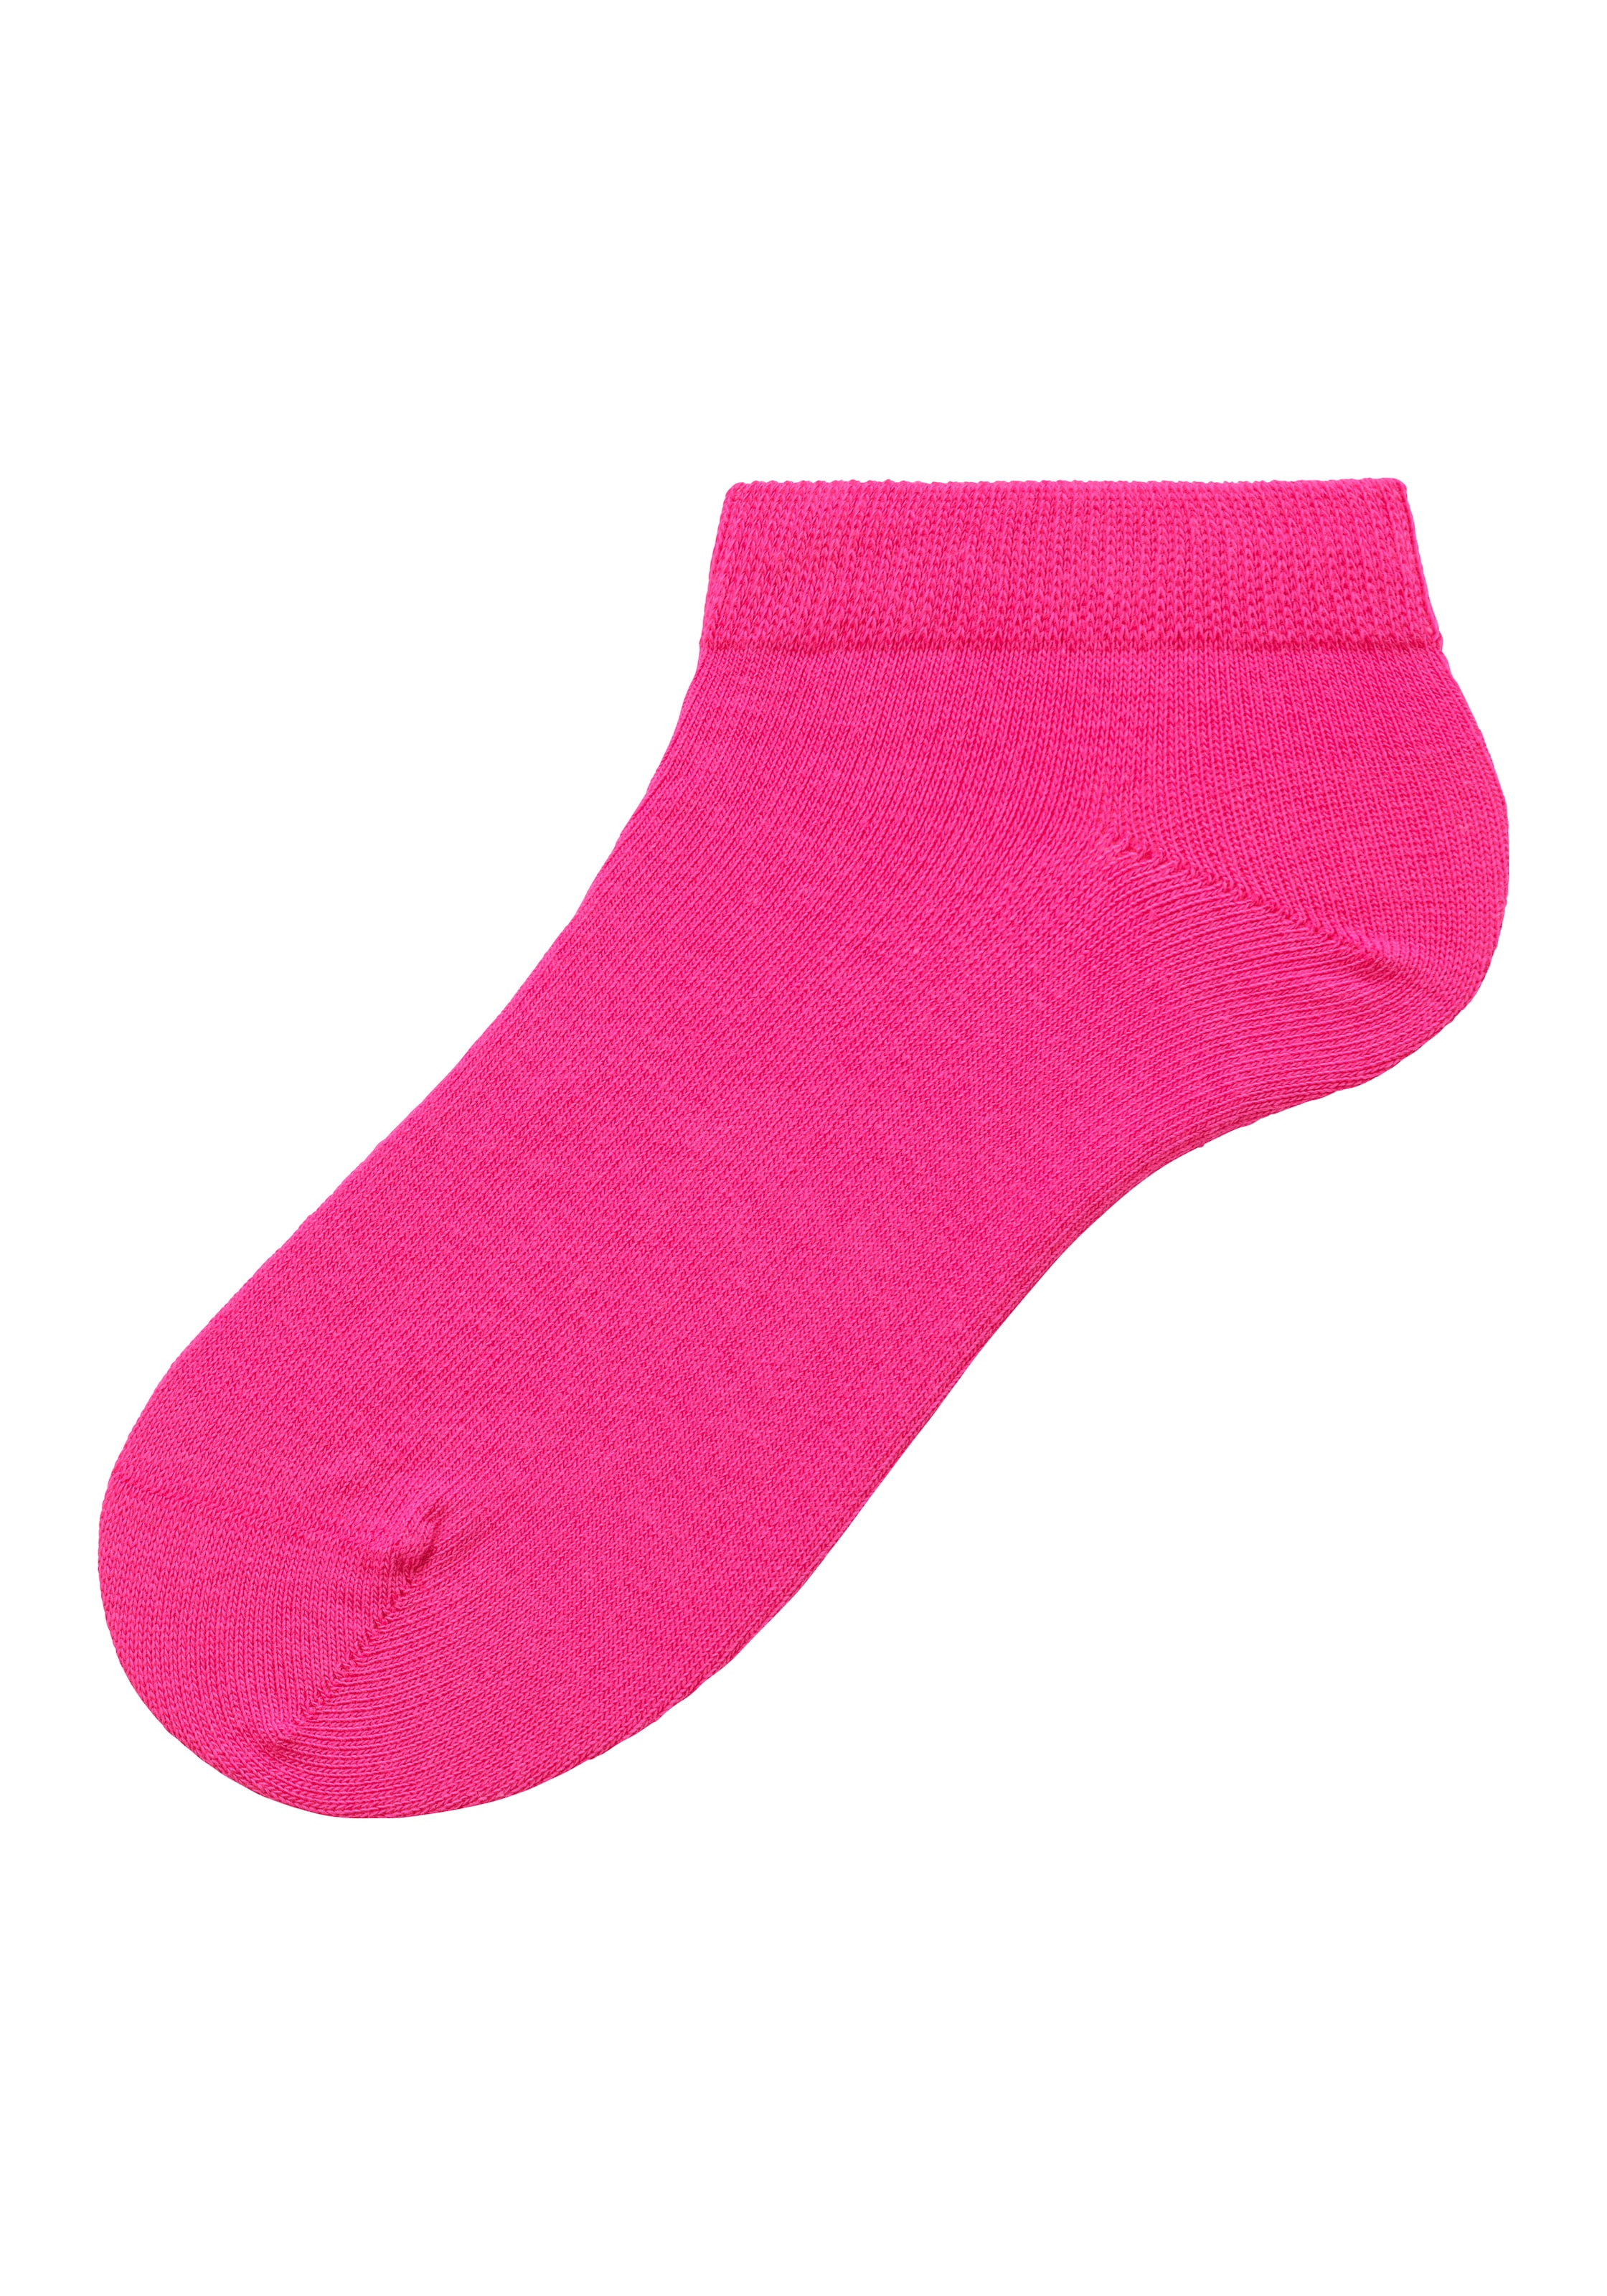 Kinder Teens (Gr. 140-176) BENCH Socken und Tasche in Navy, Grau, Pink - DV06200